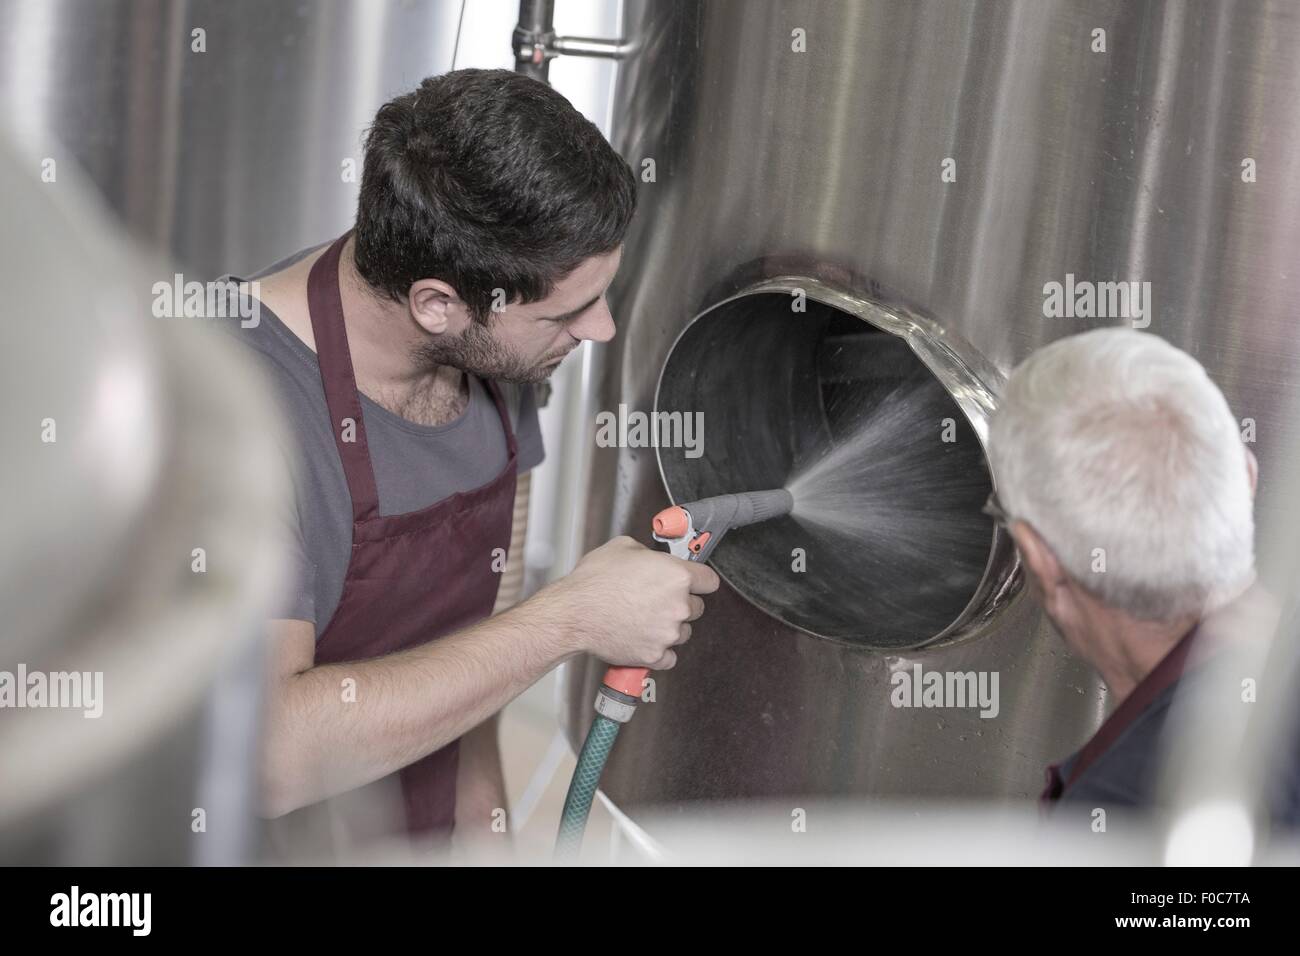 Brewer limpieza de un depósito de acero inoxidable en la cervecería Foto de stock